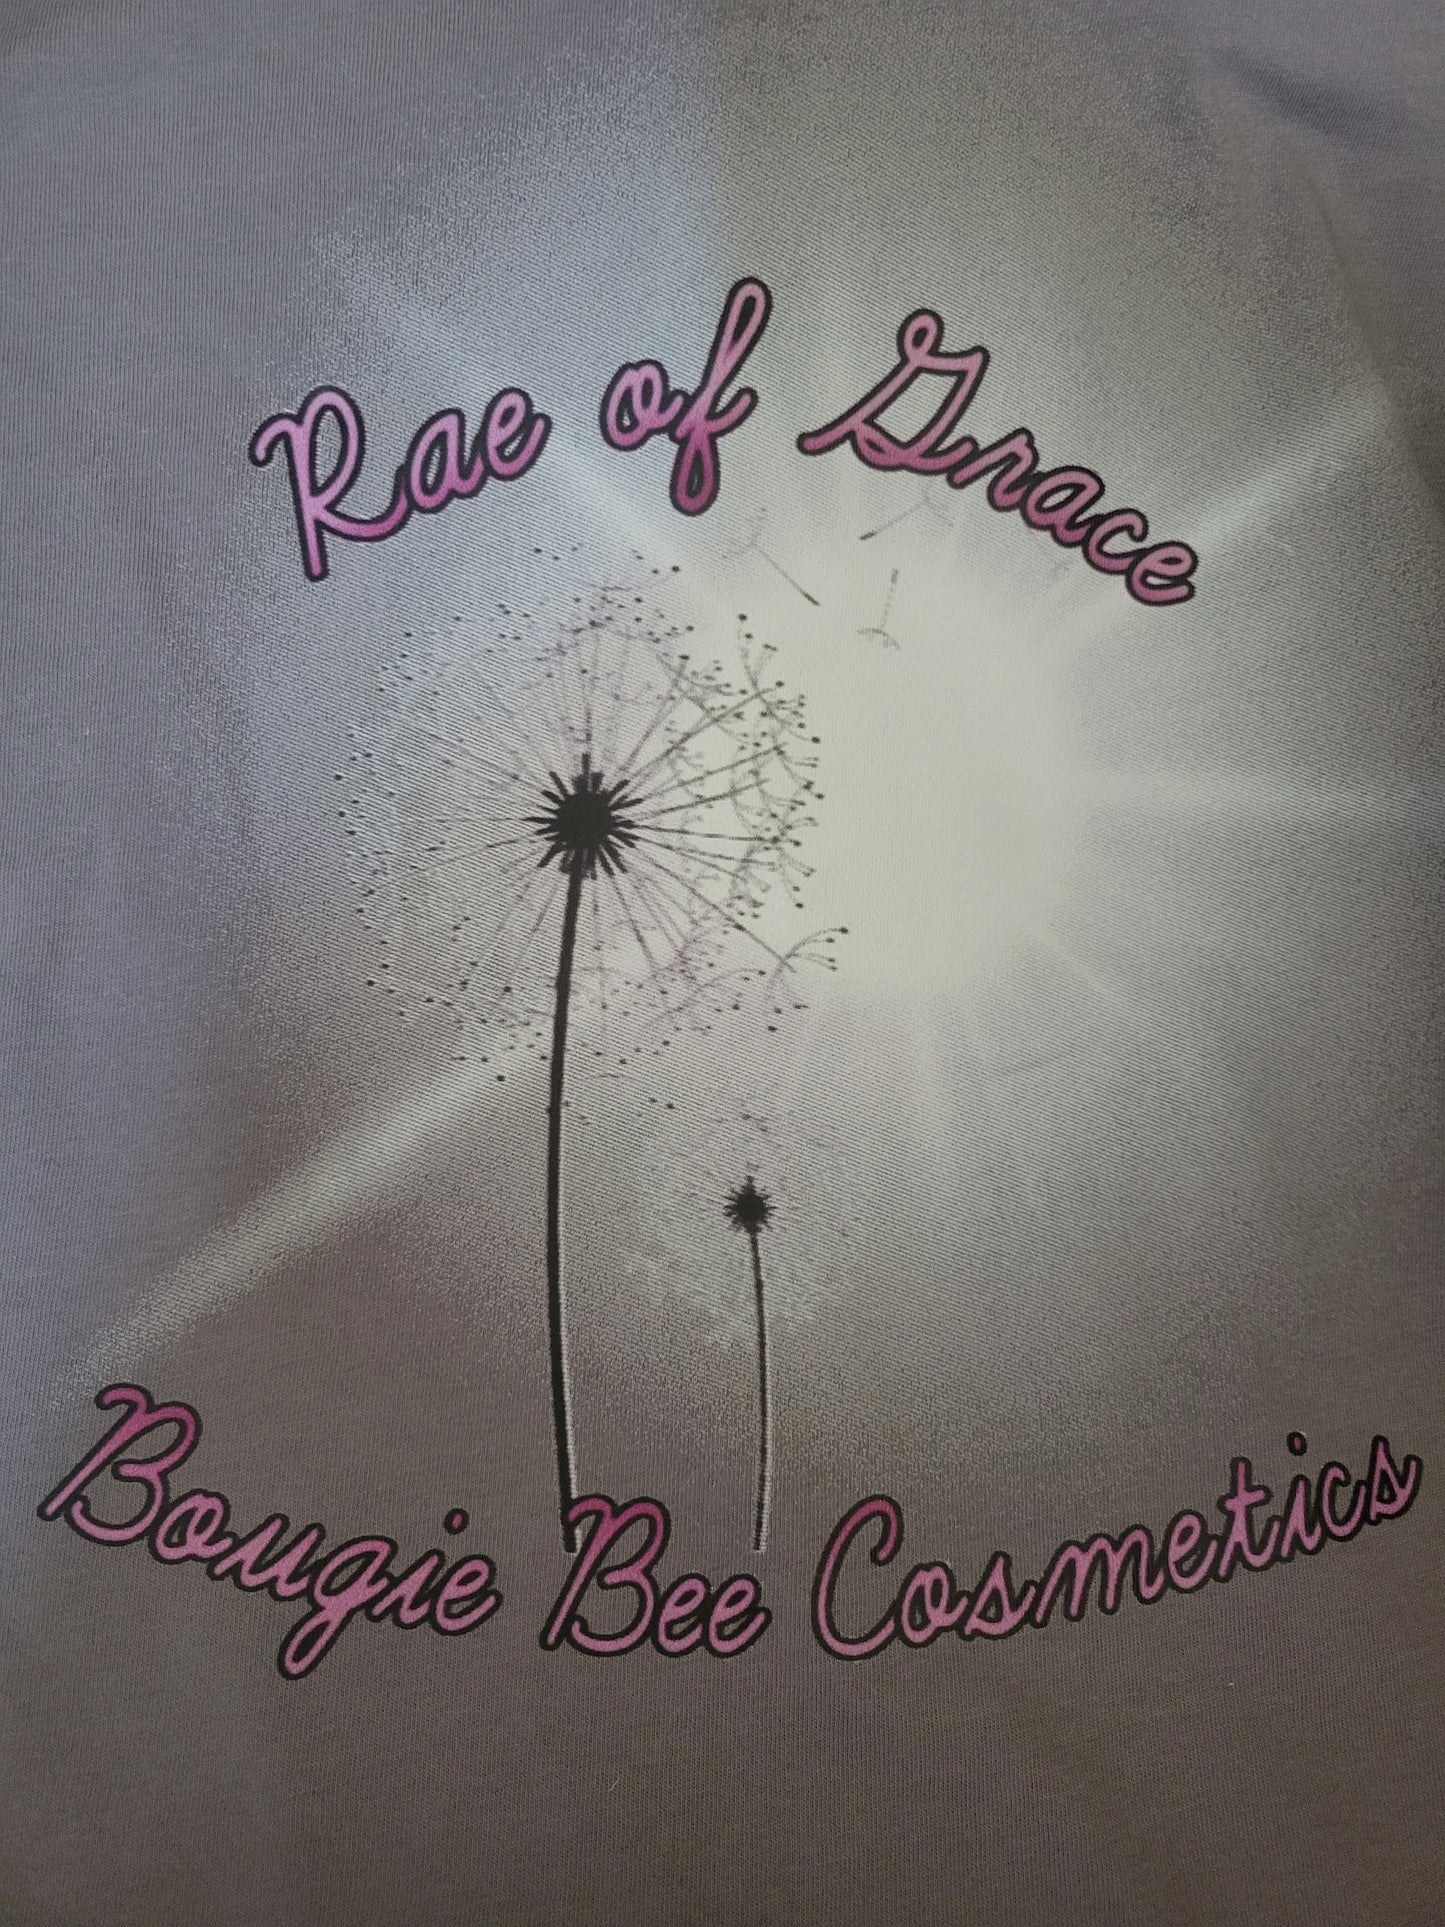 Rae of Grace Unclaimed shirts unisex sizes